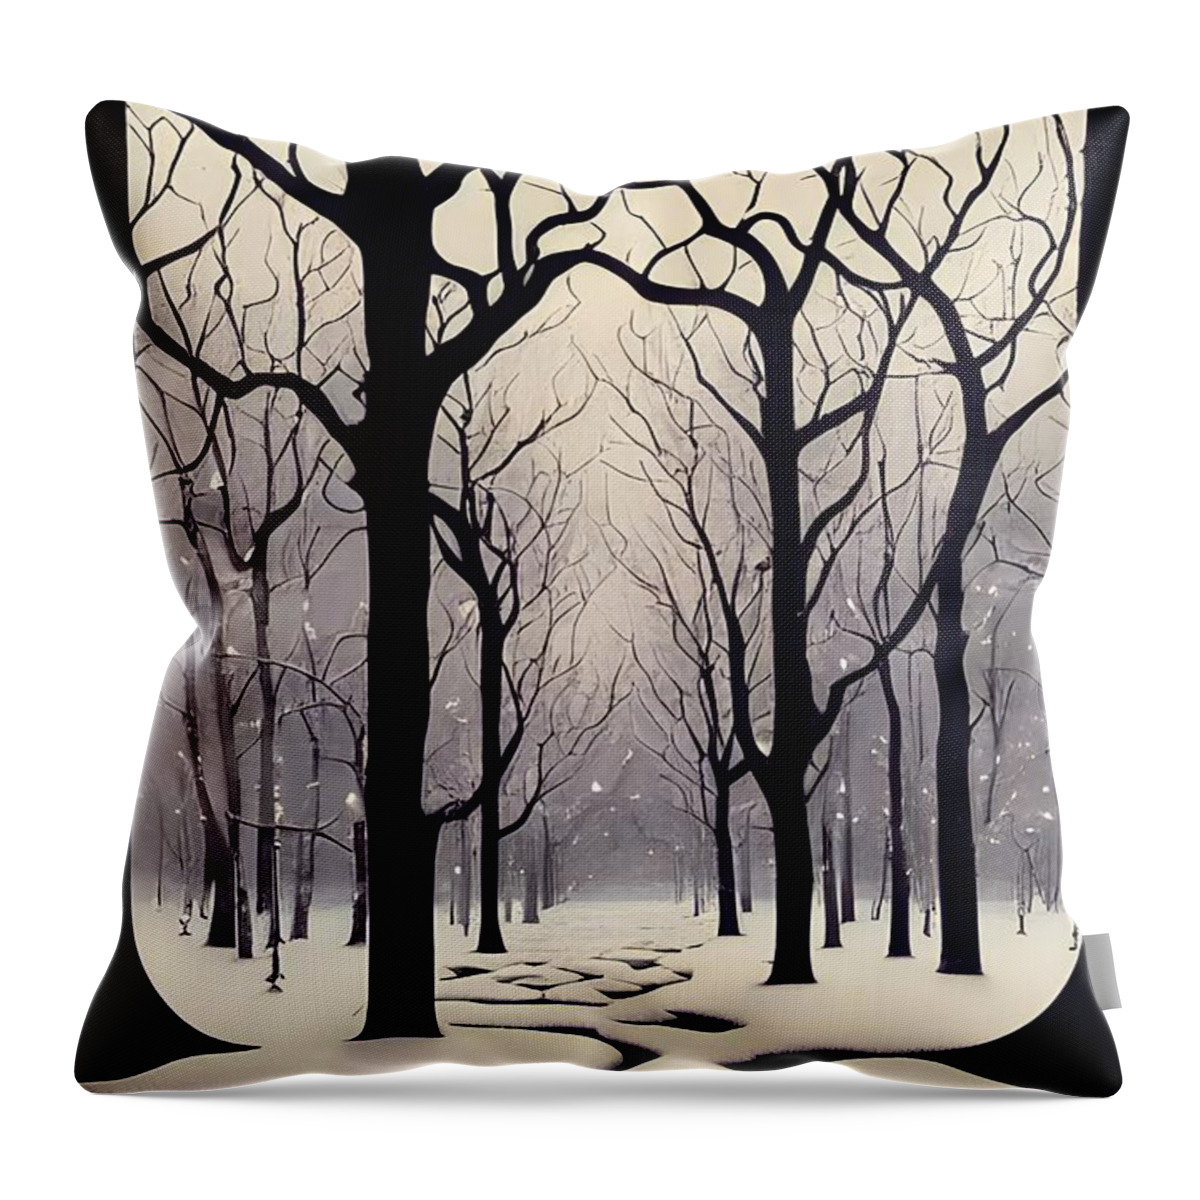 Winter Throw Pillow featuring the digital art Snowfall by Robert Knight